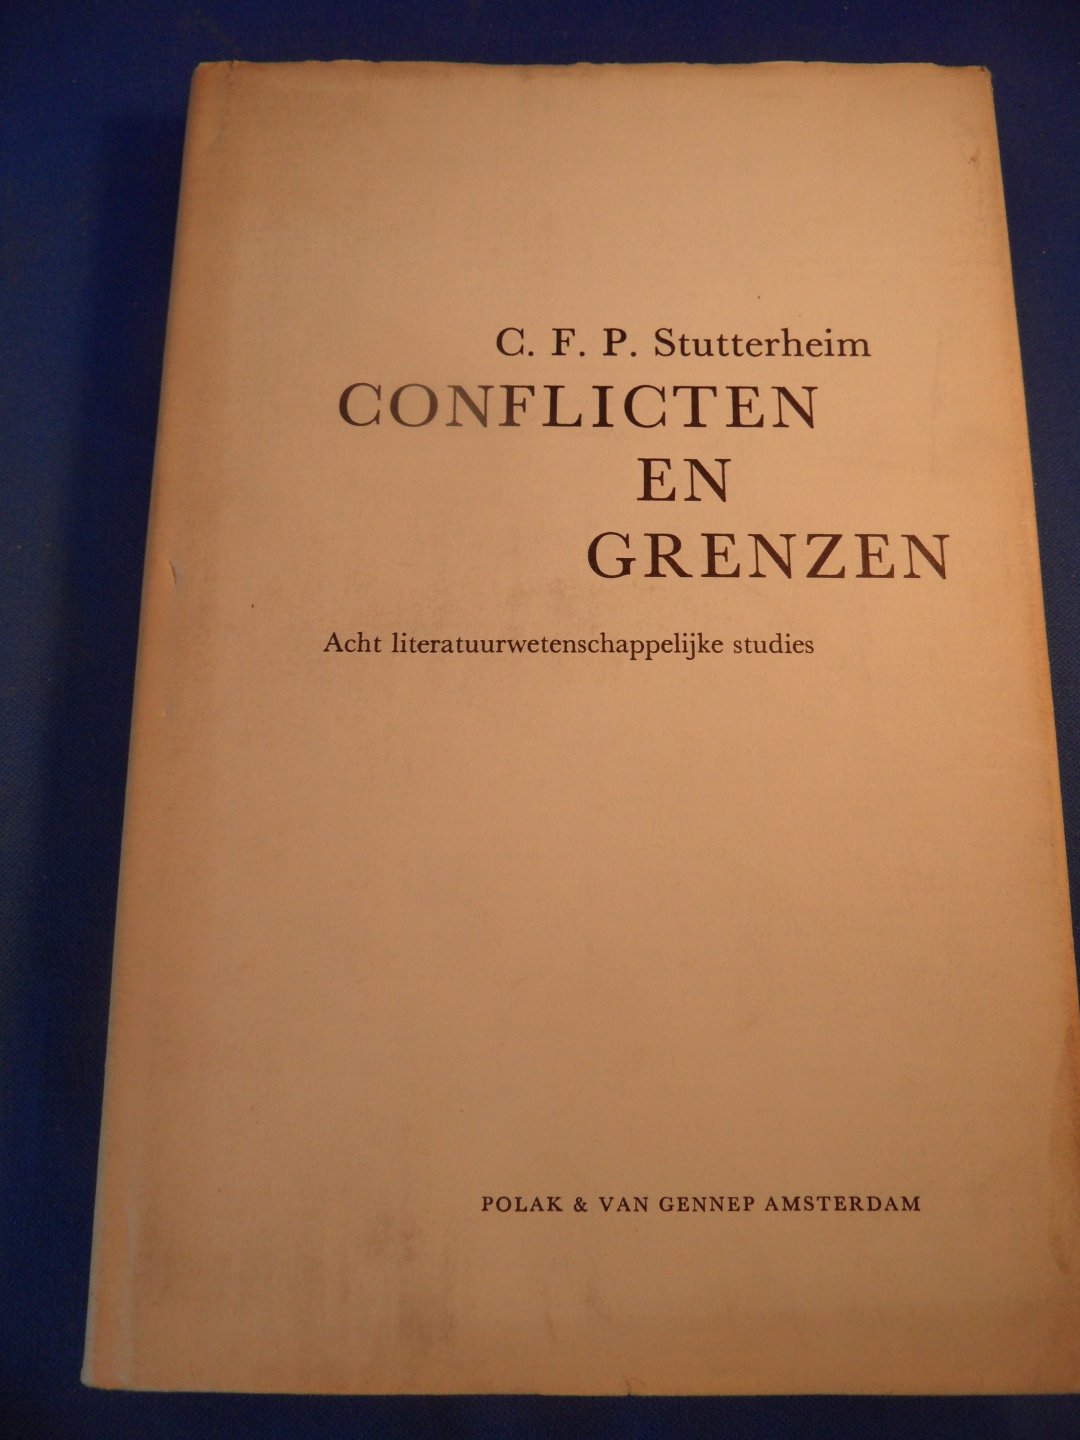 Stutterheim, C.F.P. - Conflicten en grenzen. Acht literatuurwetenschappelijke studies